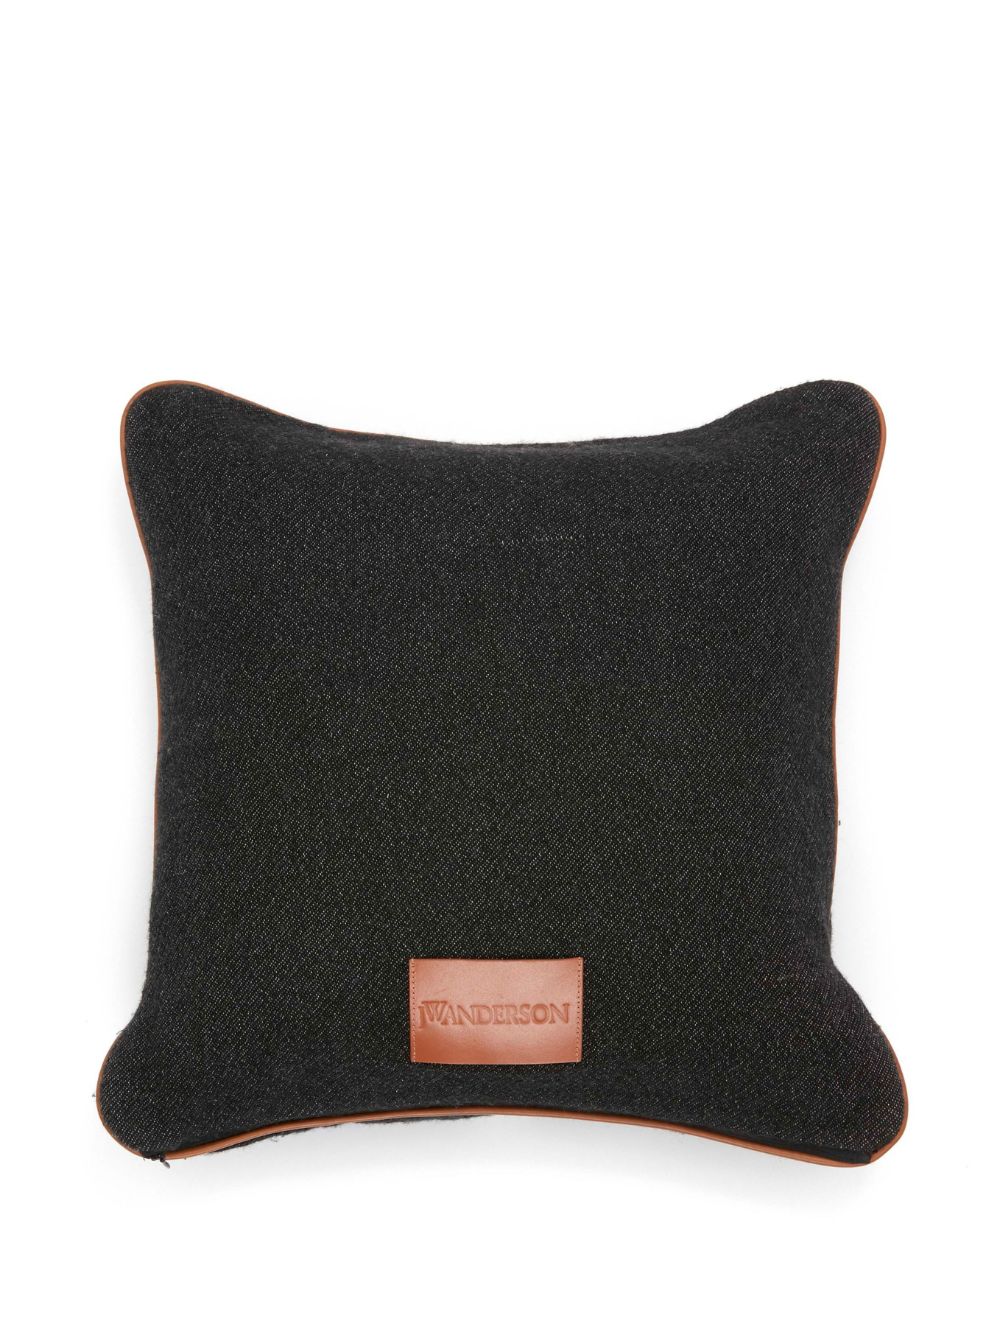 Anchor-logo squared cushion